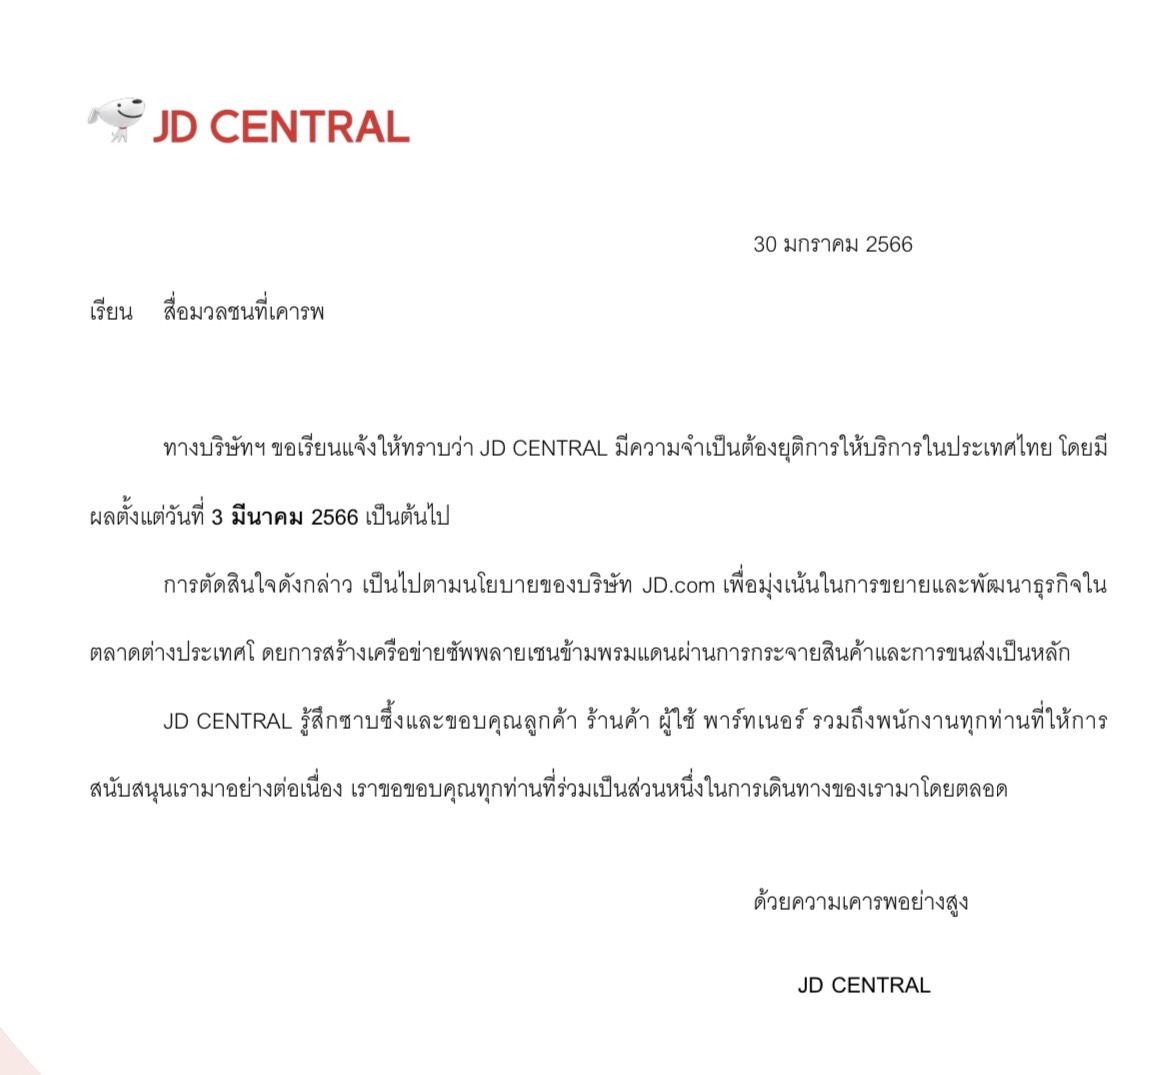 JD CENTRAL ยุติบริการในไทย